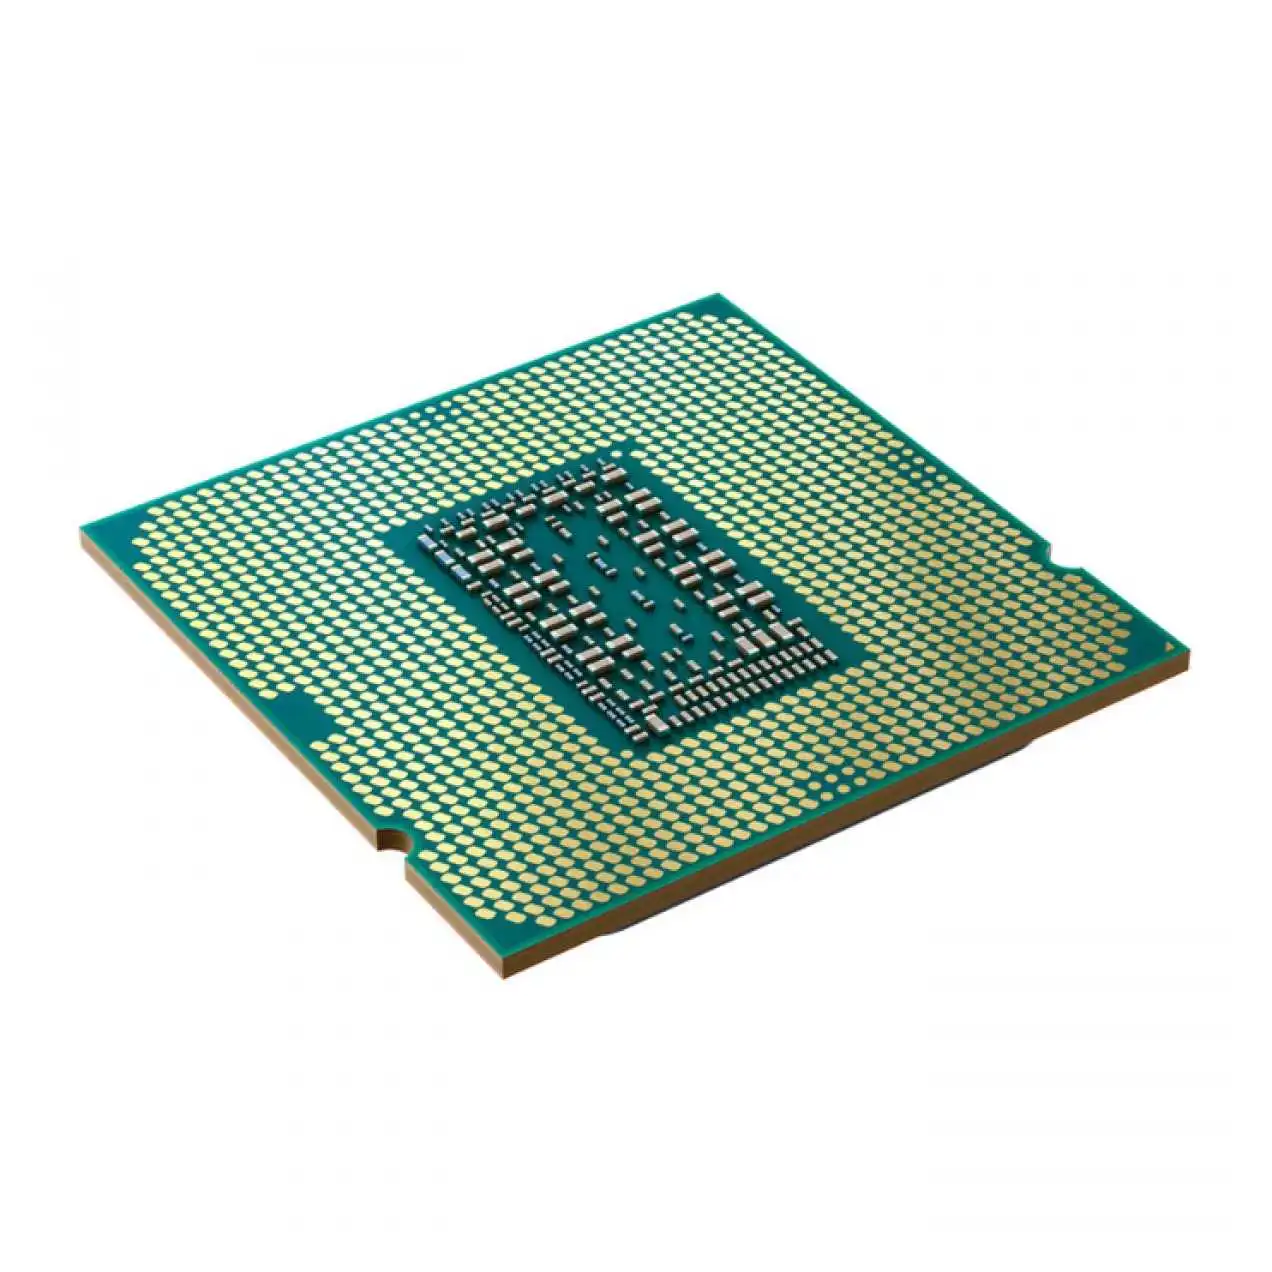 Intel-core-i5-11600k-3-9ghz-12mb-1200p-11-nesIl-ürün-resmi